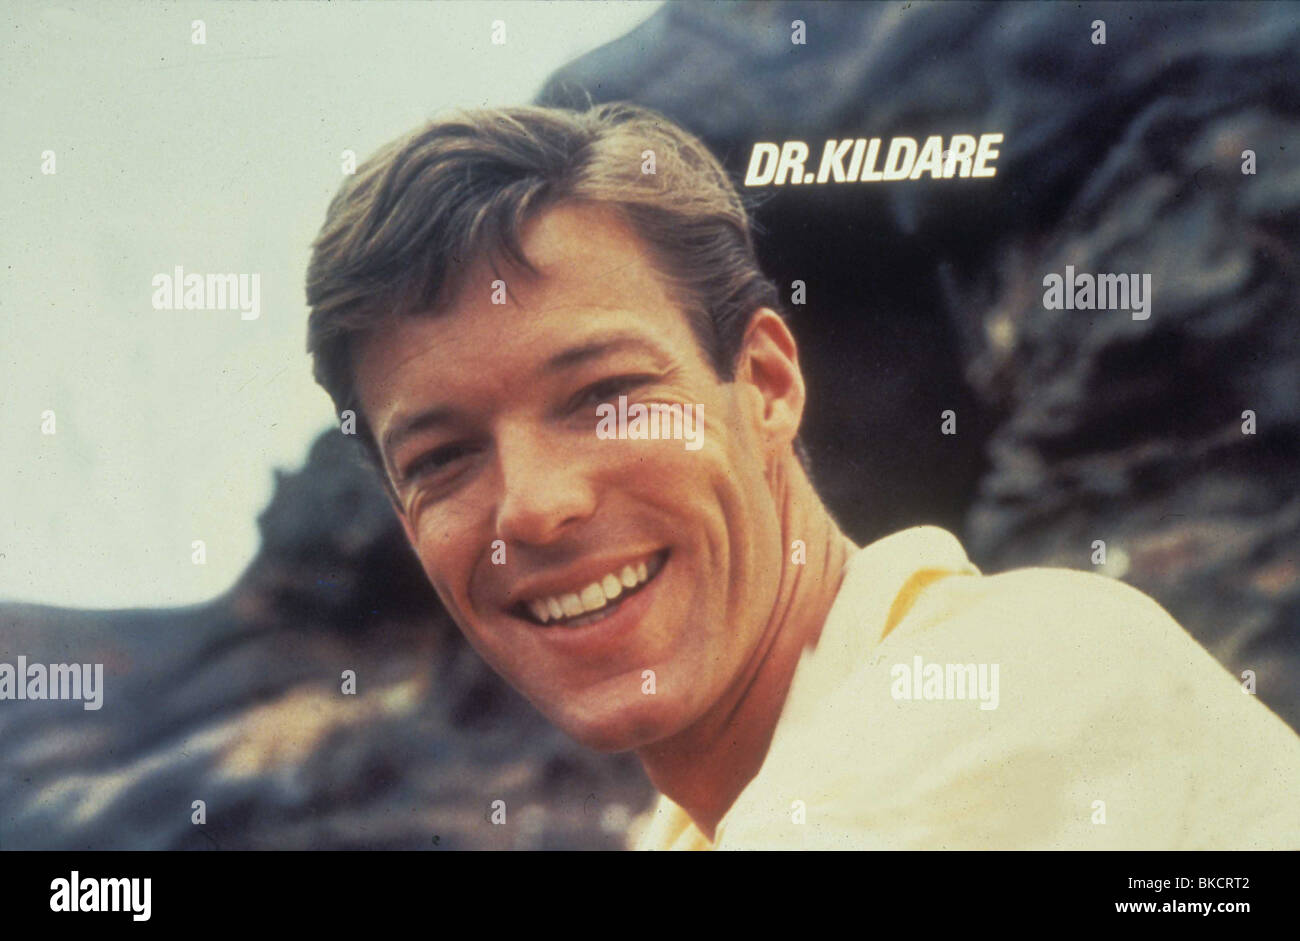 DR. KILDARE (FERNSEHAPPARAT) RICHARD CHAMBERLAIN DRKL 009 Stockfoto